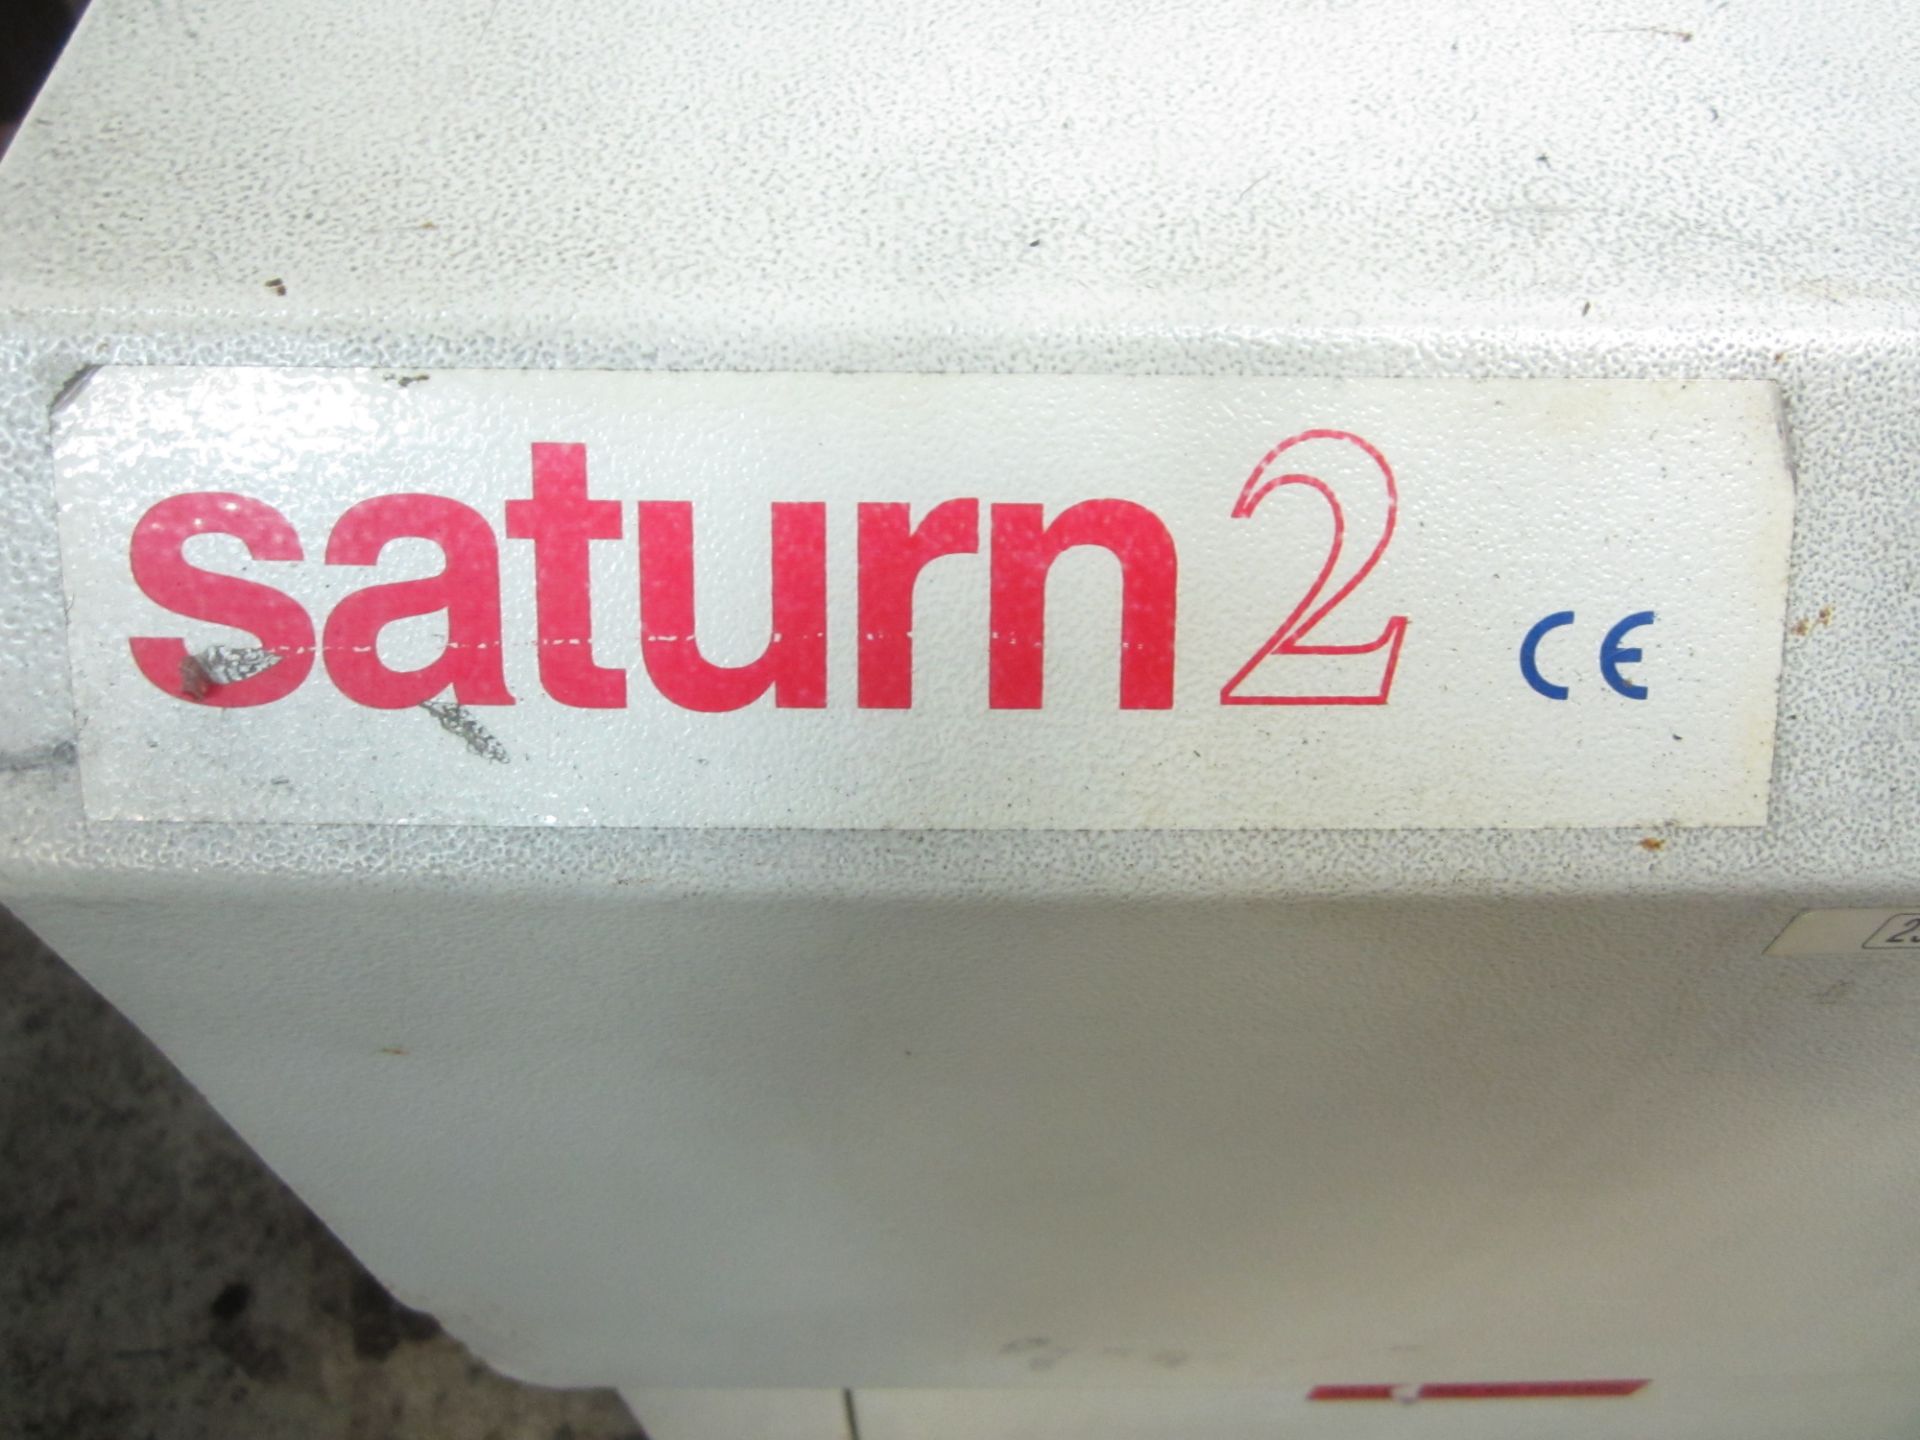 Zoller Saturn 2 Tool Presetter, s/n V420E2-00260, New 2001 - Image 7 of 8